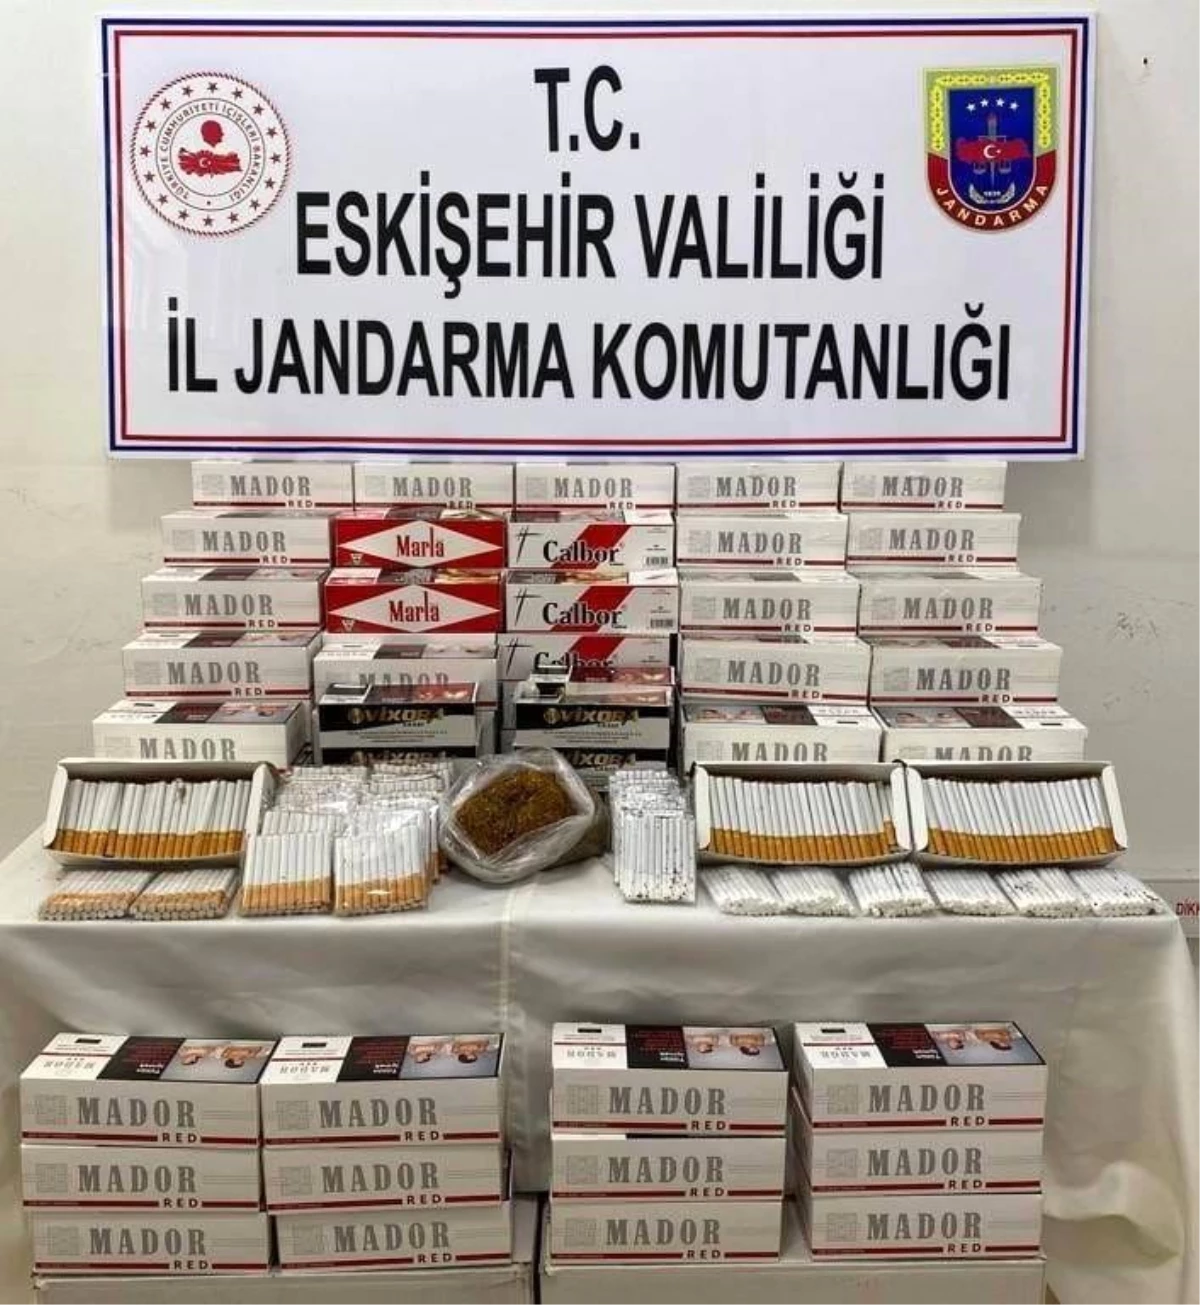 Eskişehir\'de Kaçak Sigara Operasyonu: Çok Sayıda Bandrolsüz ve Hologramsız Makaron Ele Geçirildi